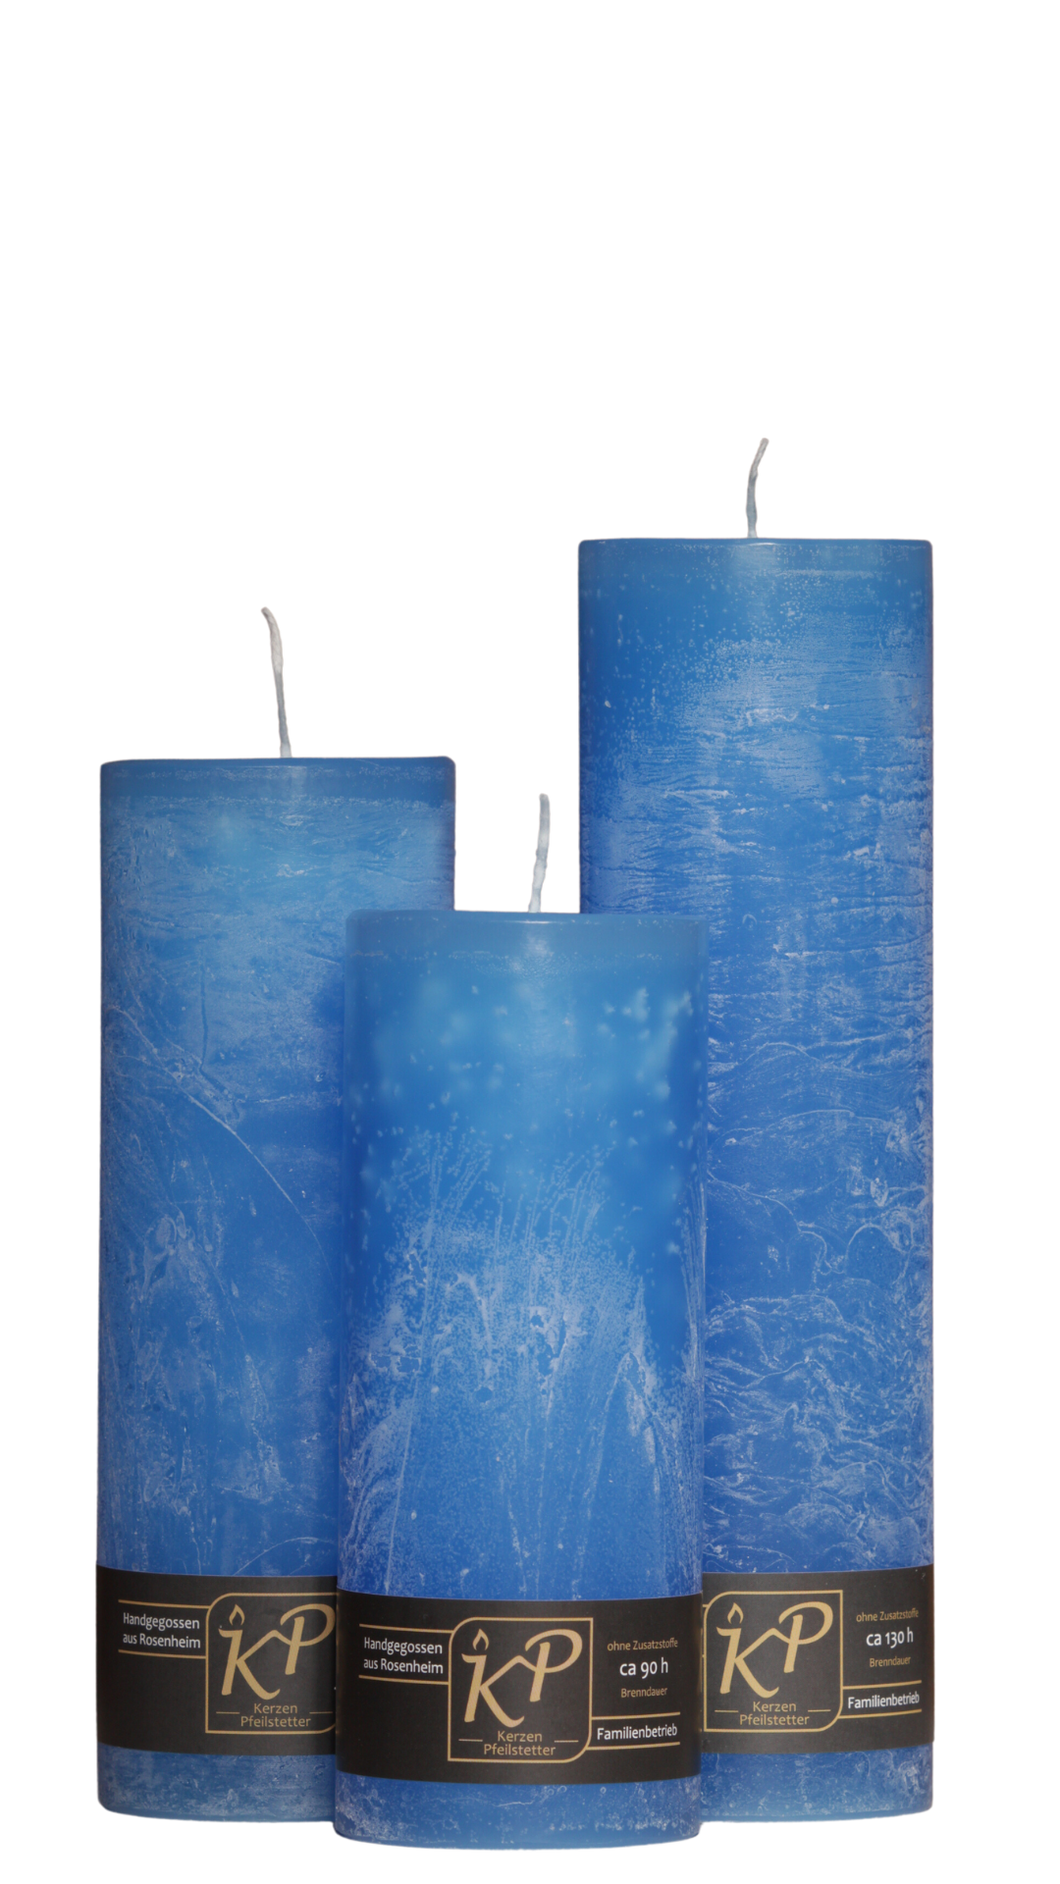 Dalina flower candle | medium blue | ~ 130h burning time